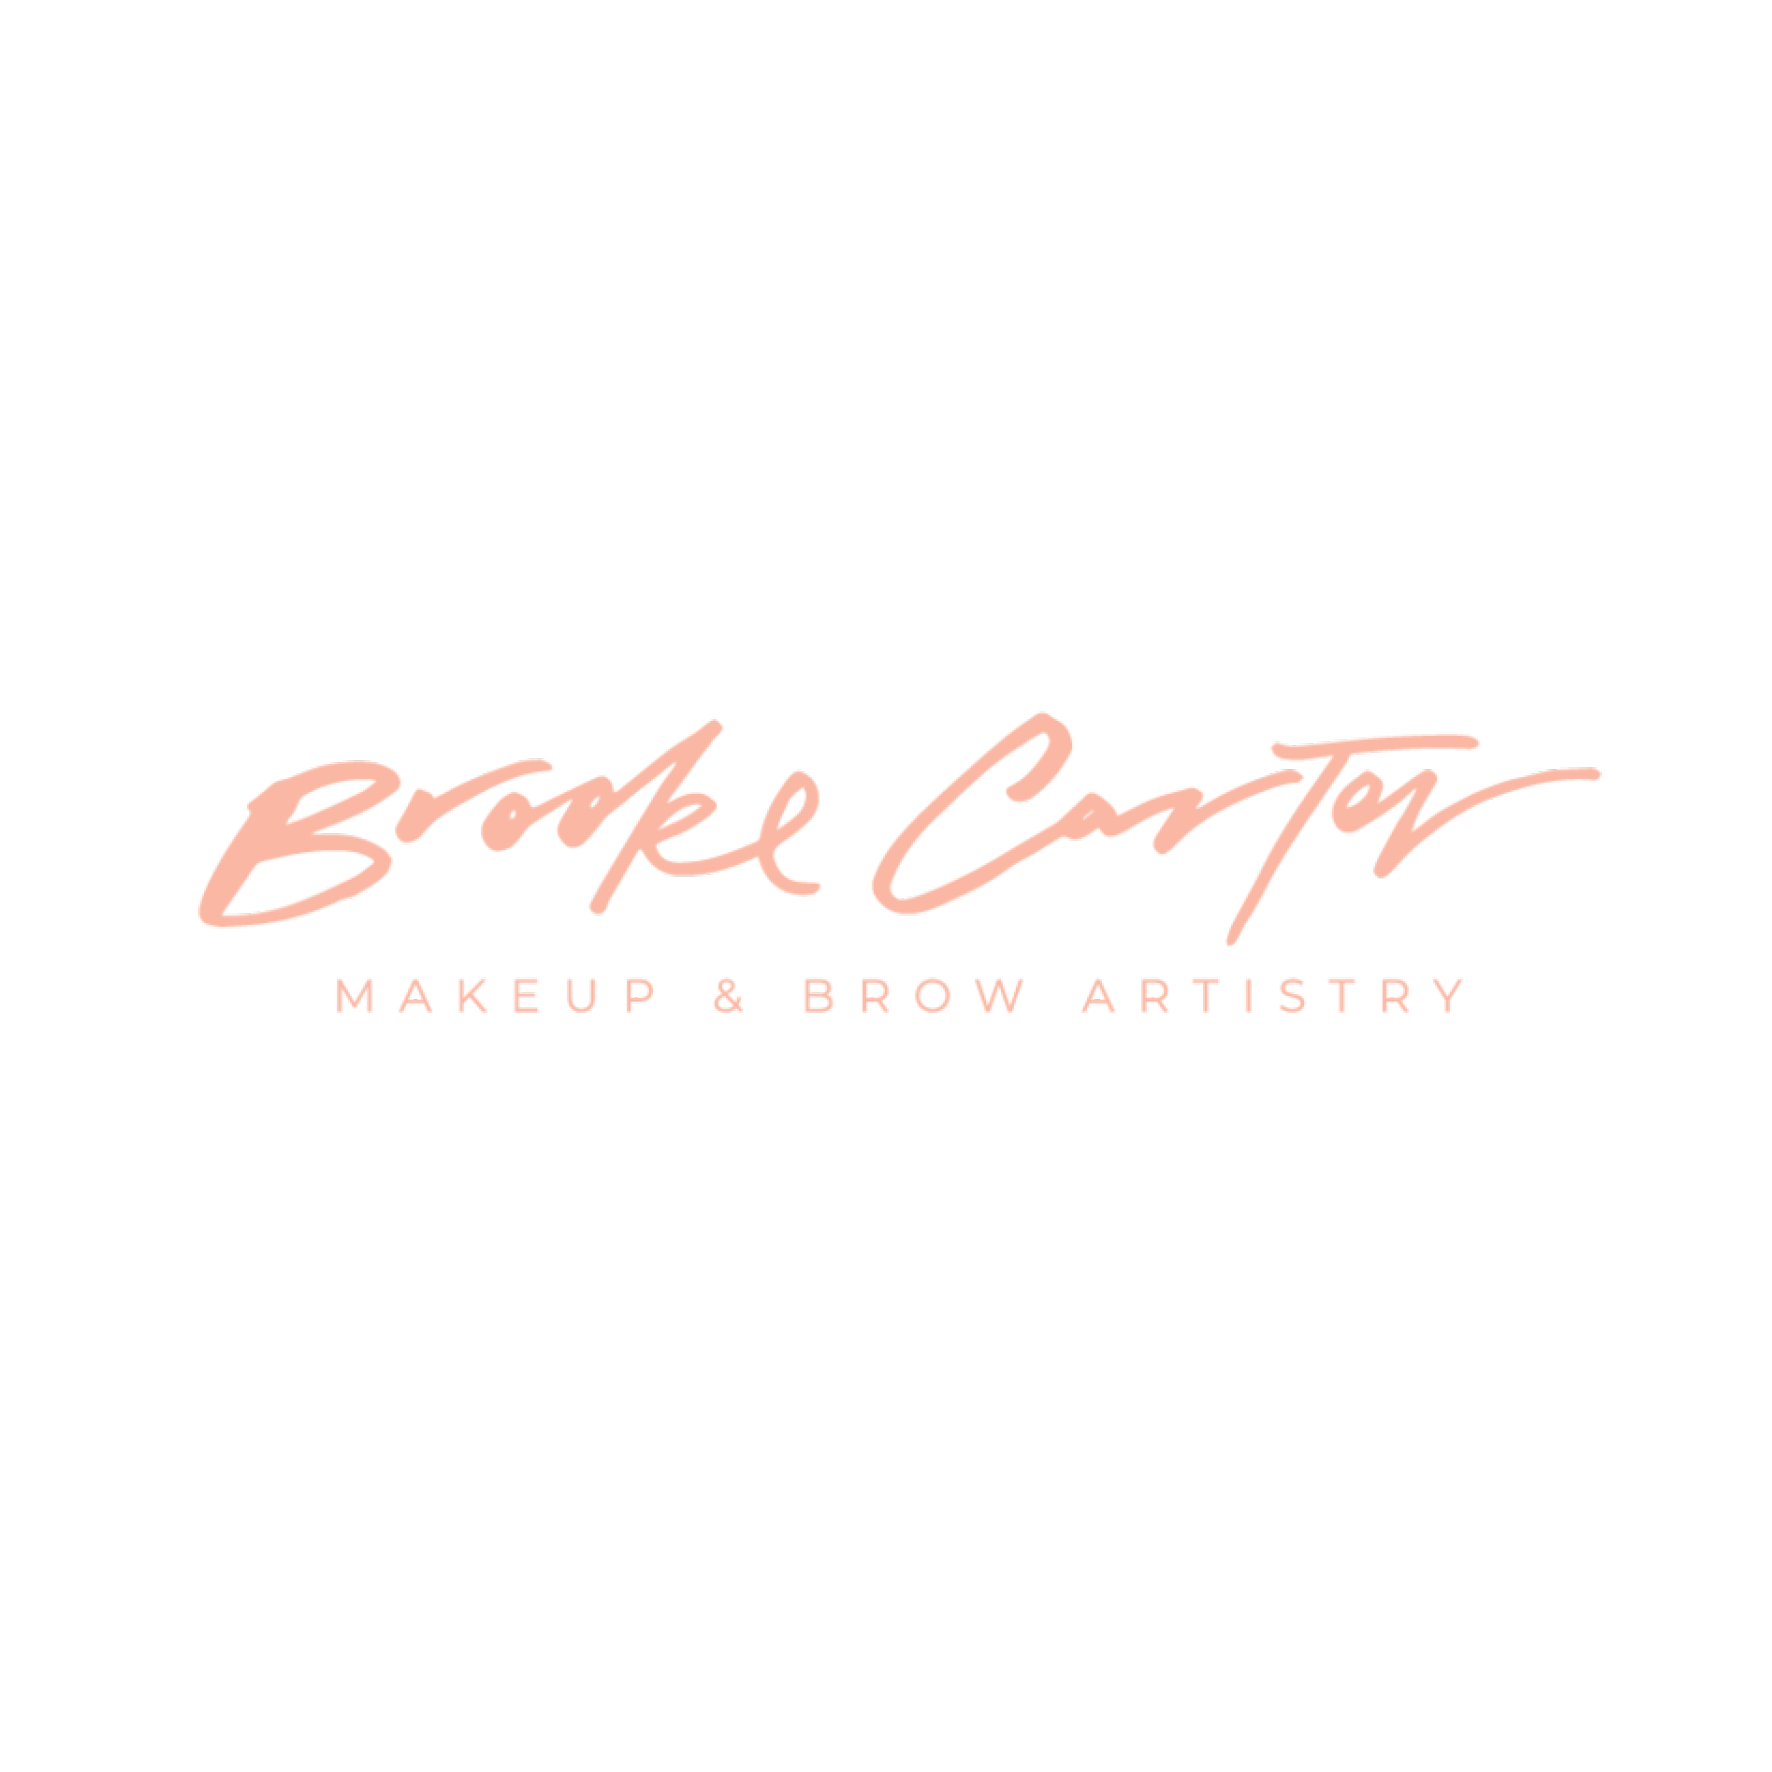 Vendor Logo - Brooke Carter.png